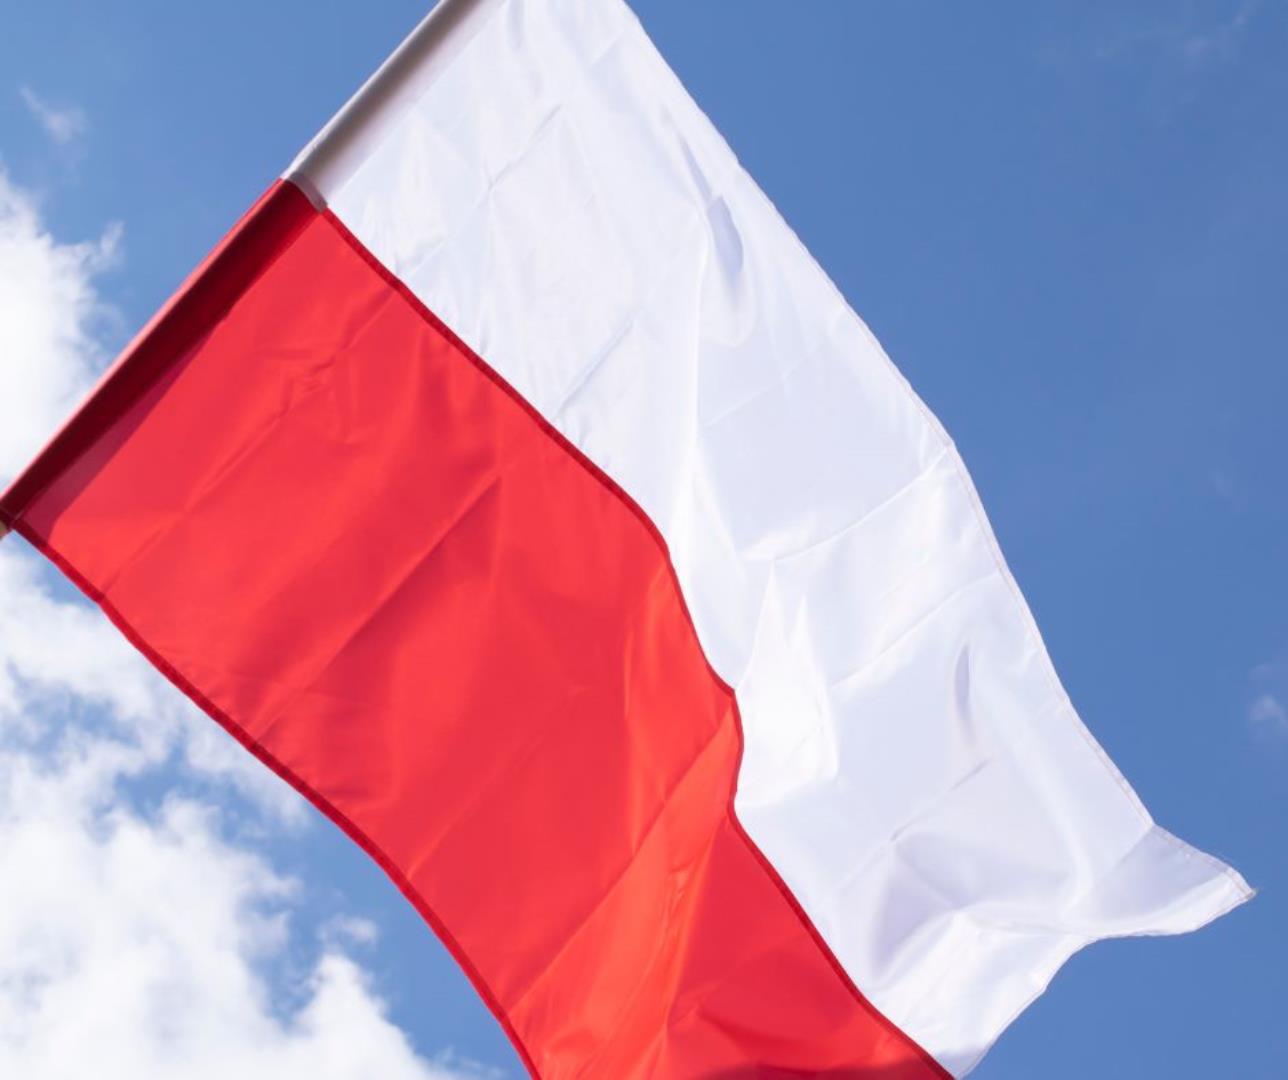 2 maja - Dzień Flagi i Dzień Polonii i Polaków poza granicami kraju